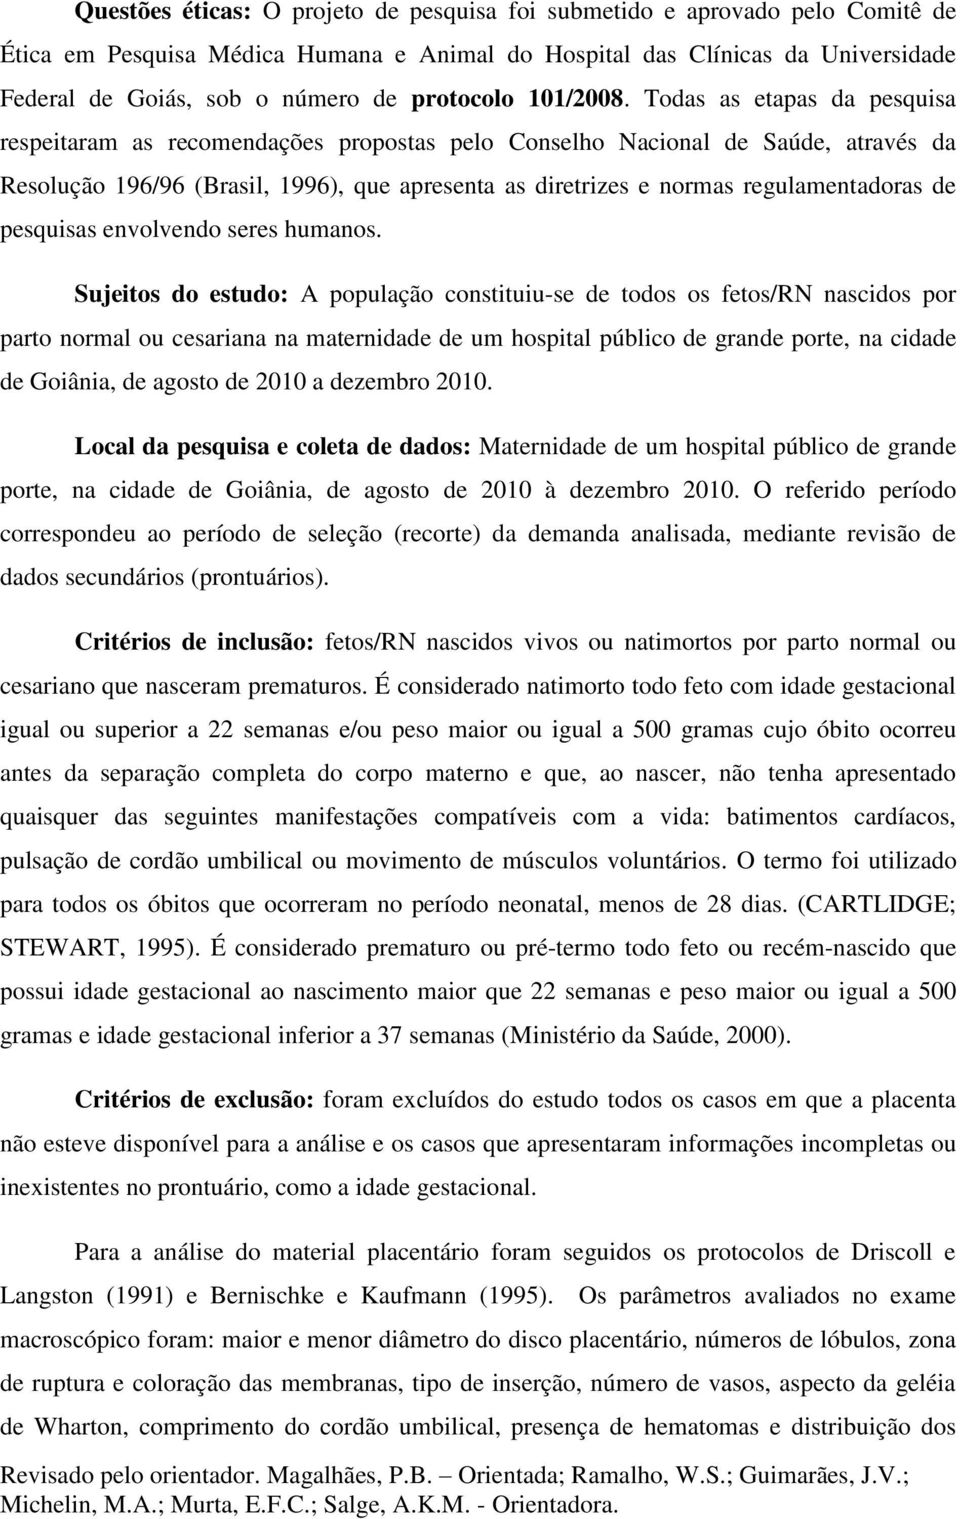 Todas as etapas da pesquisa respeitaram as recomendações propostas pelo Conselho Nacional de Saúde, através da Resolução 196/96 (Brasil, 1996), que apresenta as diretrizes e normas regulamentadoras